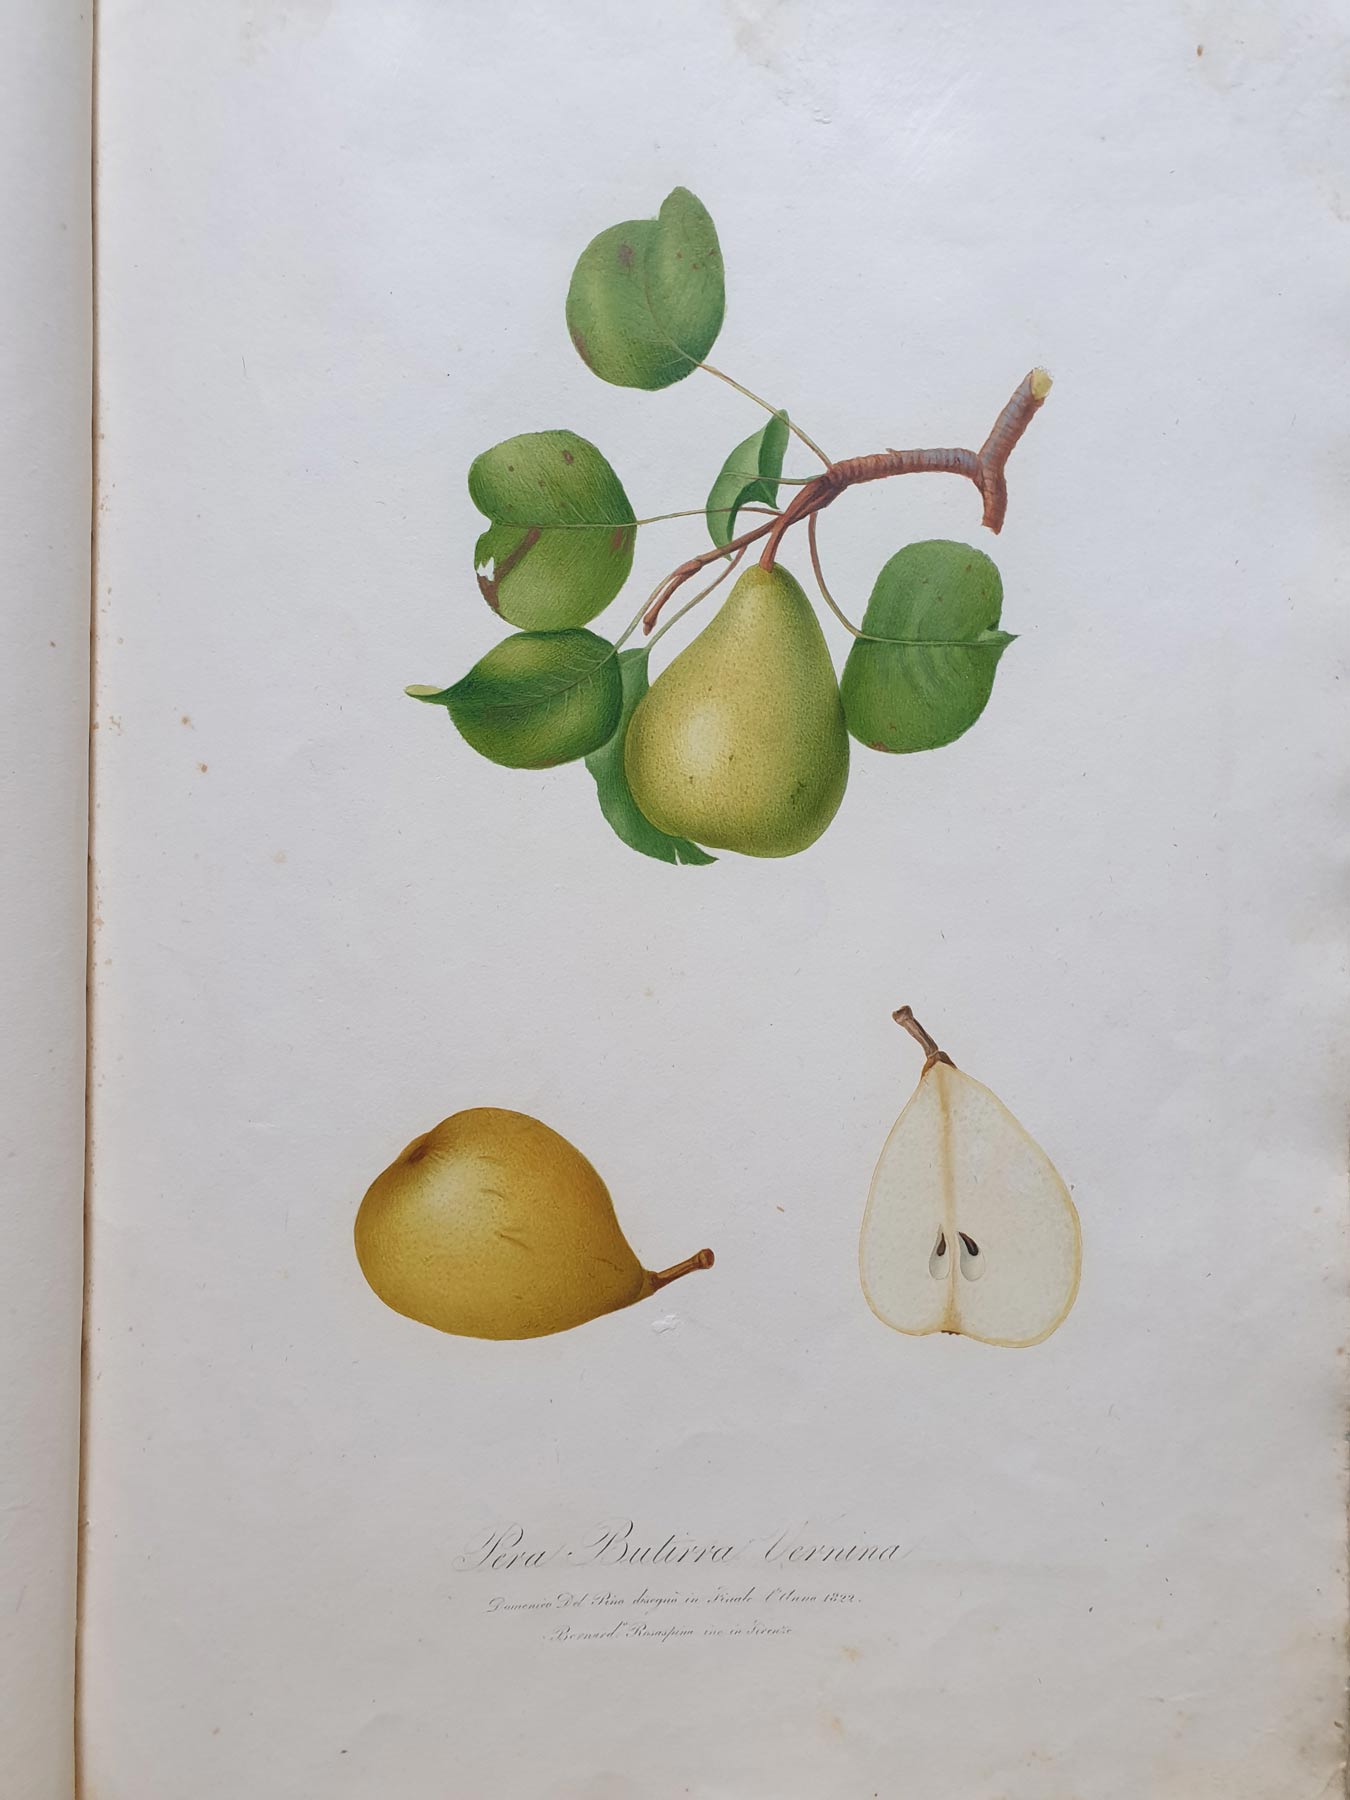 Pomona italiana, illustrazione della pera butirra vernina